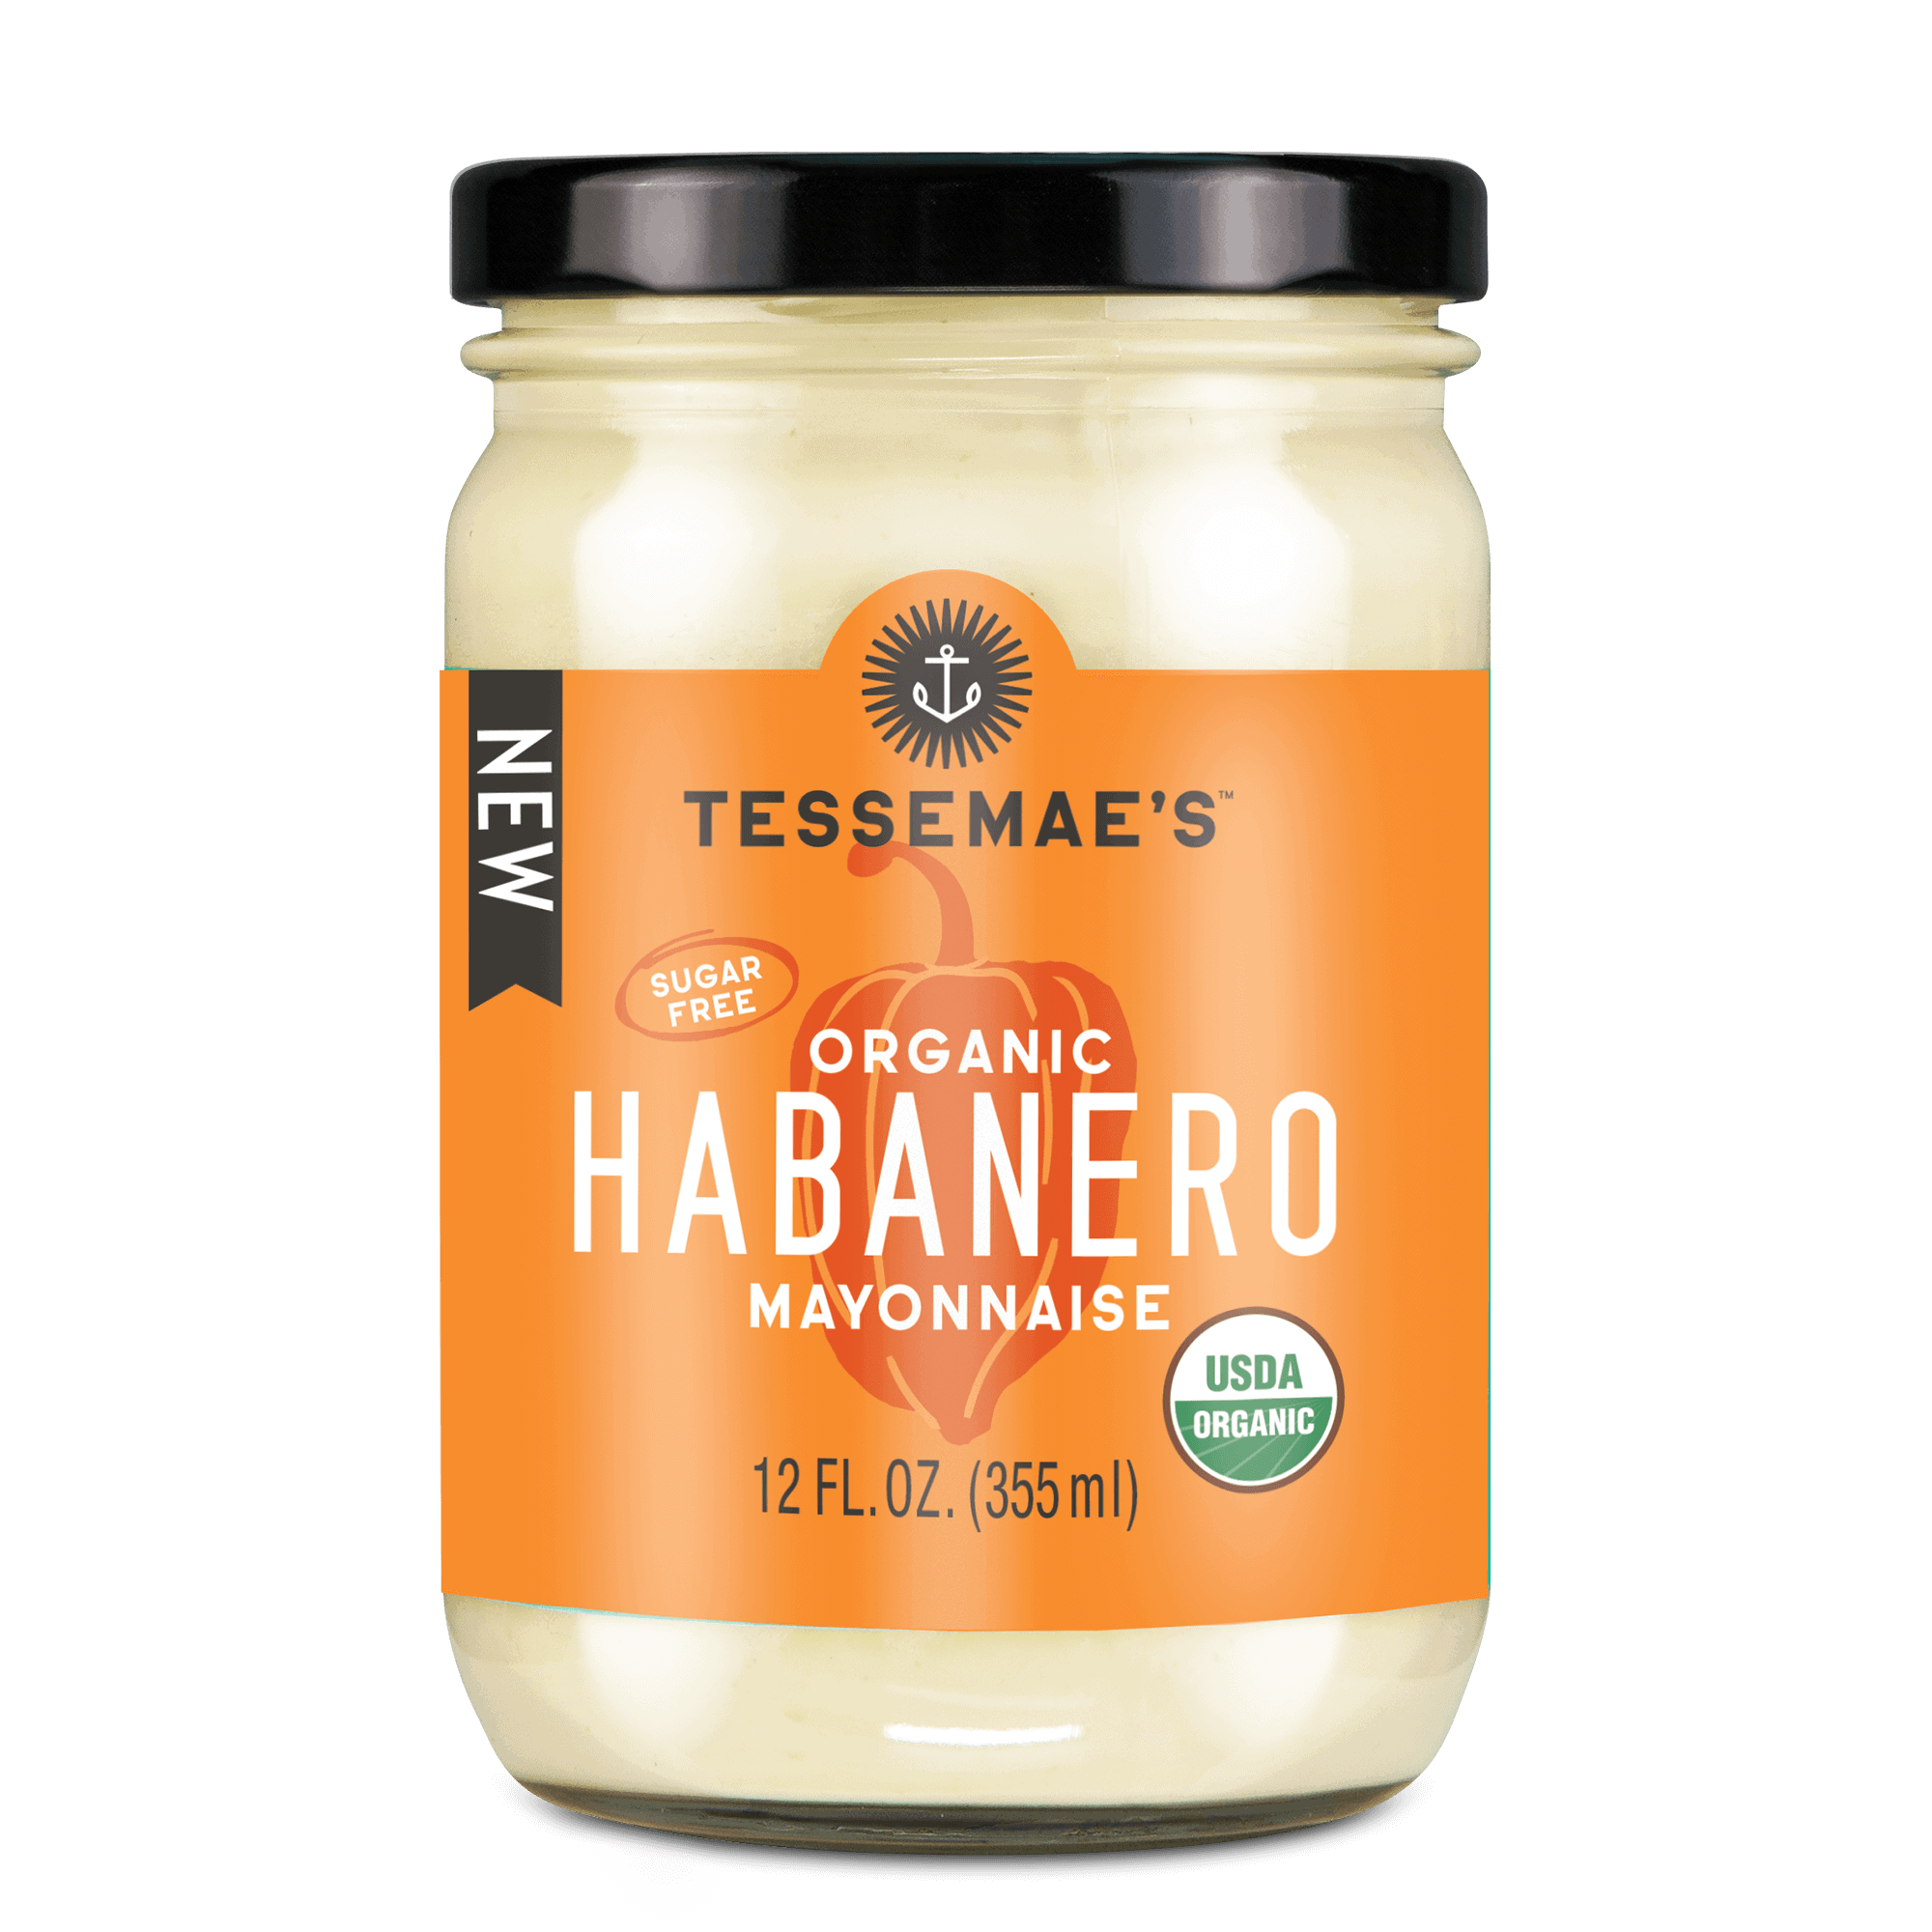 Tessemae's Organic Habanero Mayonnaise 6 units per case 12.0 oz